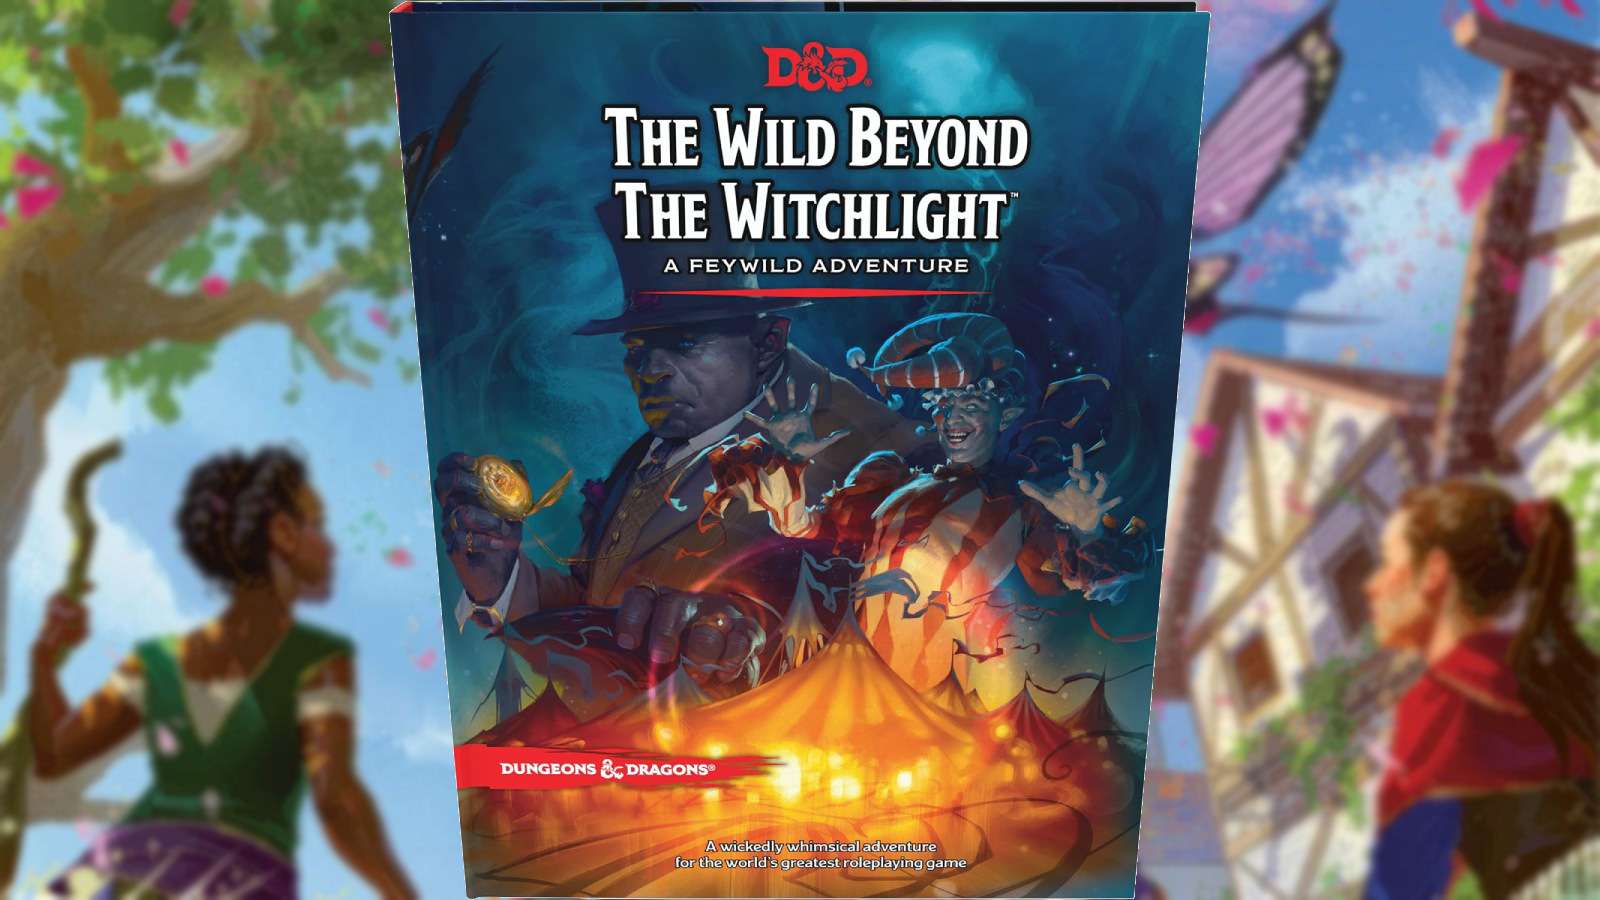 D&D Witchlight book